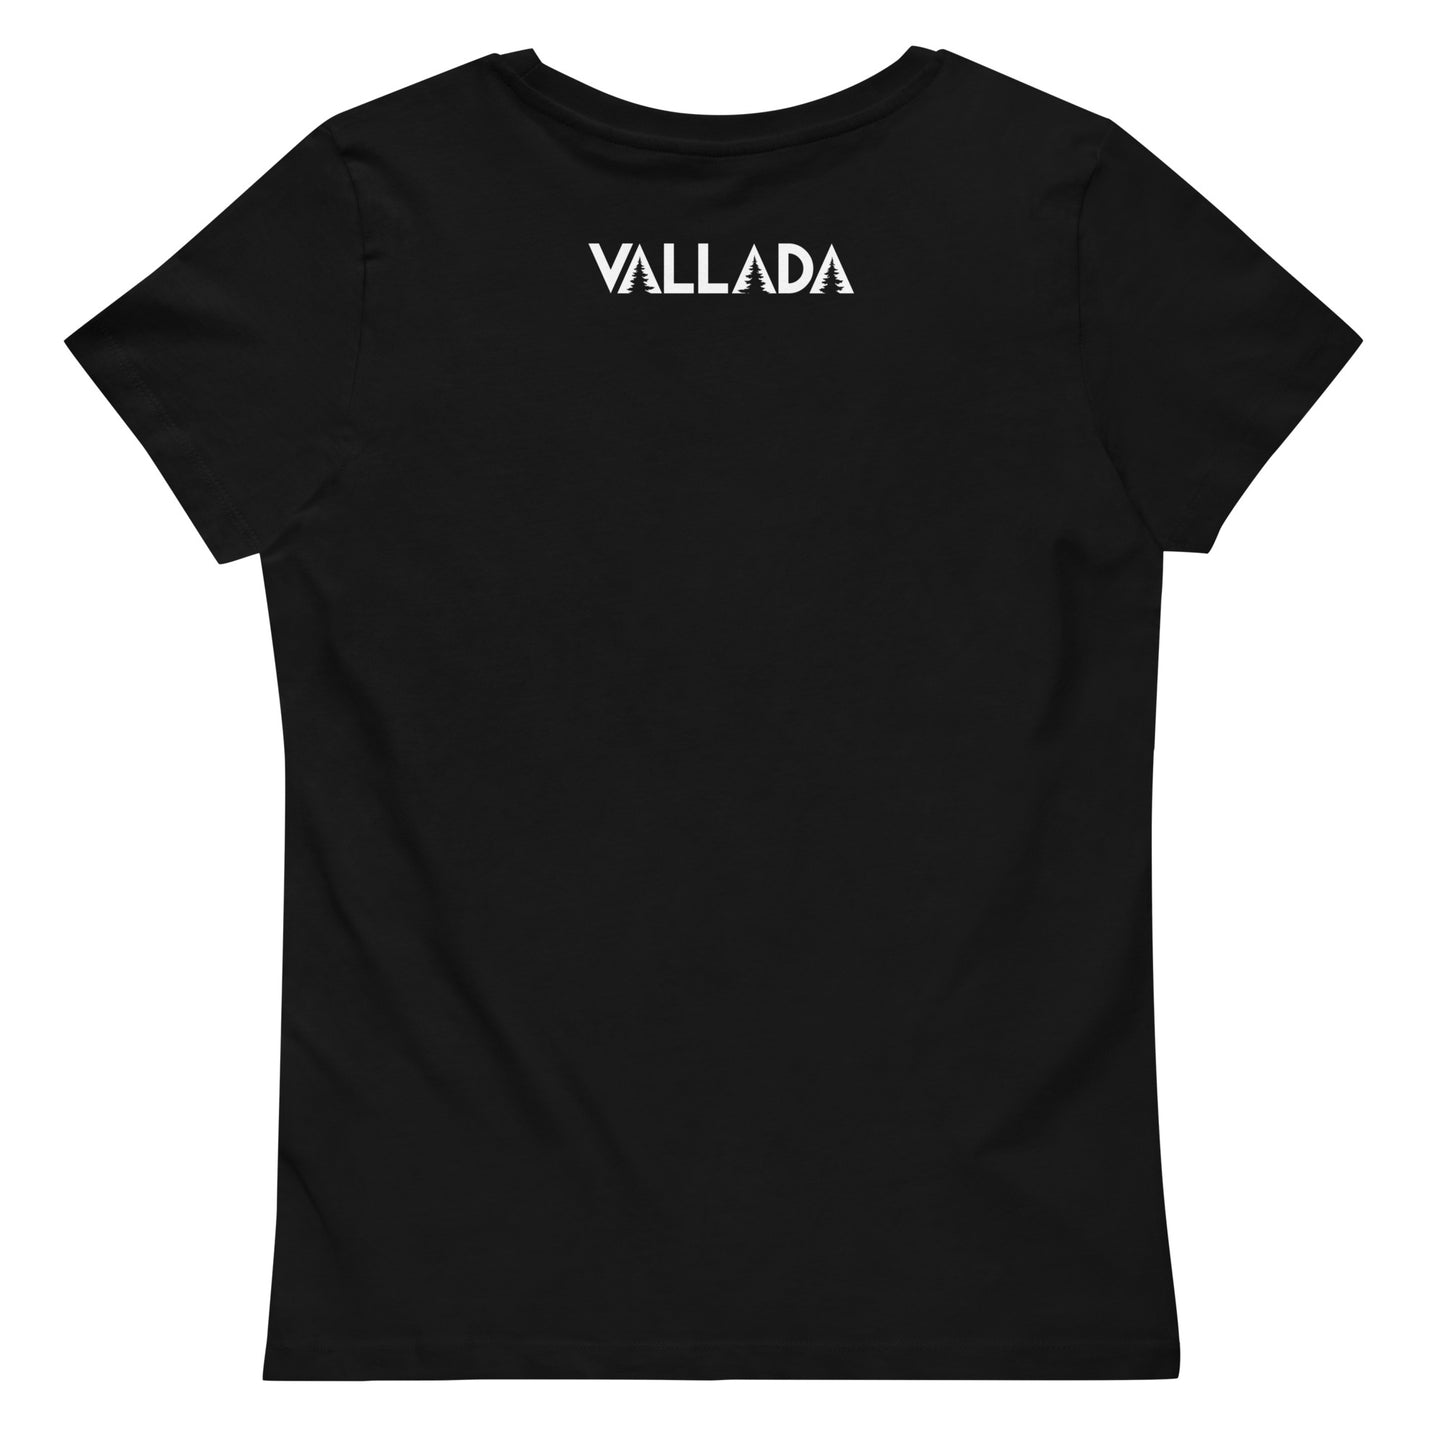 Die Rückenansicht eines schwarzen T-Shirts mit figurbetontem Schnitt aus der Säntis-Collection von Vallada. Wir sehen im oberen Bereich das Logo der Marke Vallada.